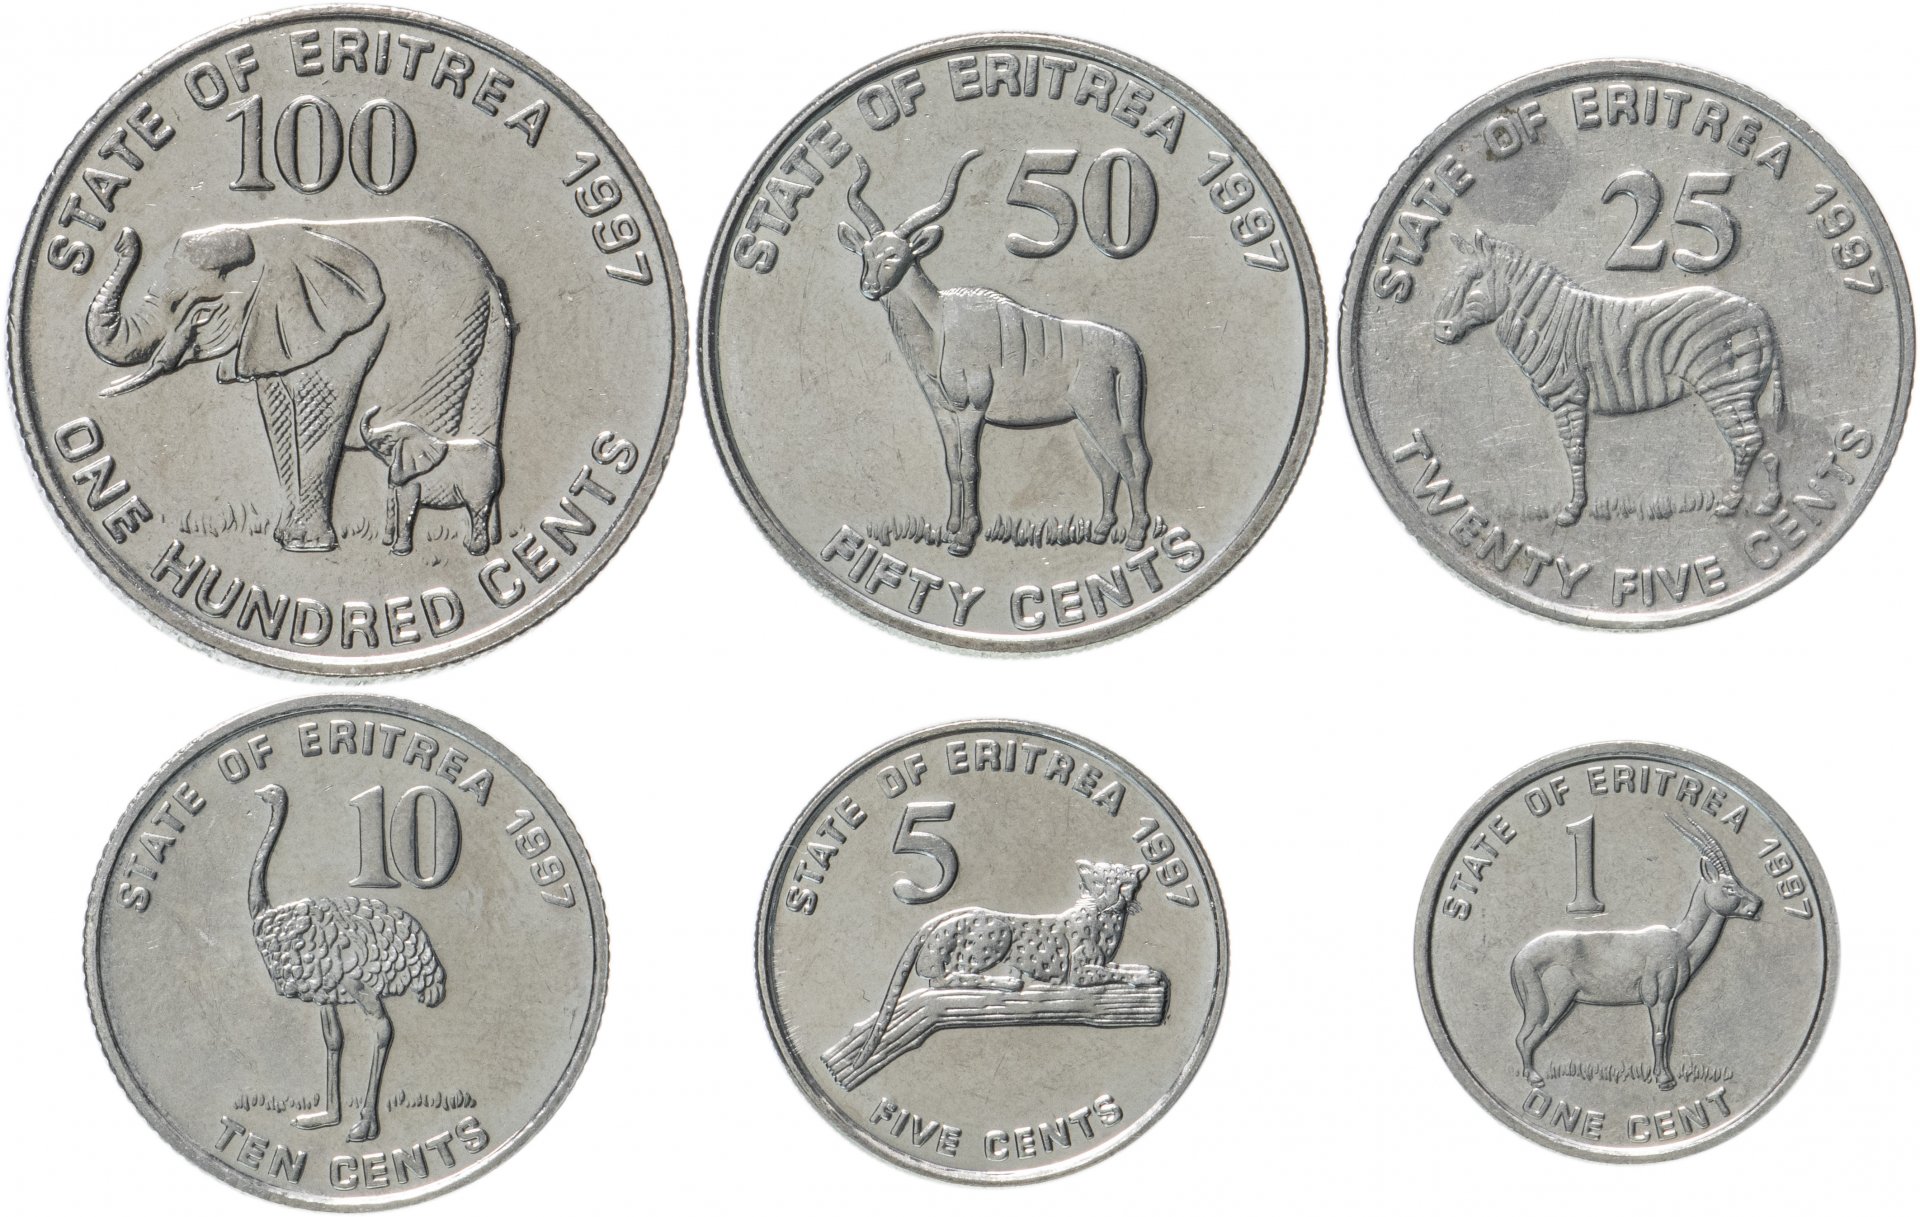 Сторона монеты 6 букв. Монеты Эритреи. Марки Эритрея. Эритрея 1 накфа 1997 монетник. Эритрея валюта.